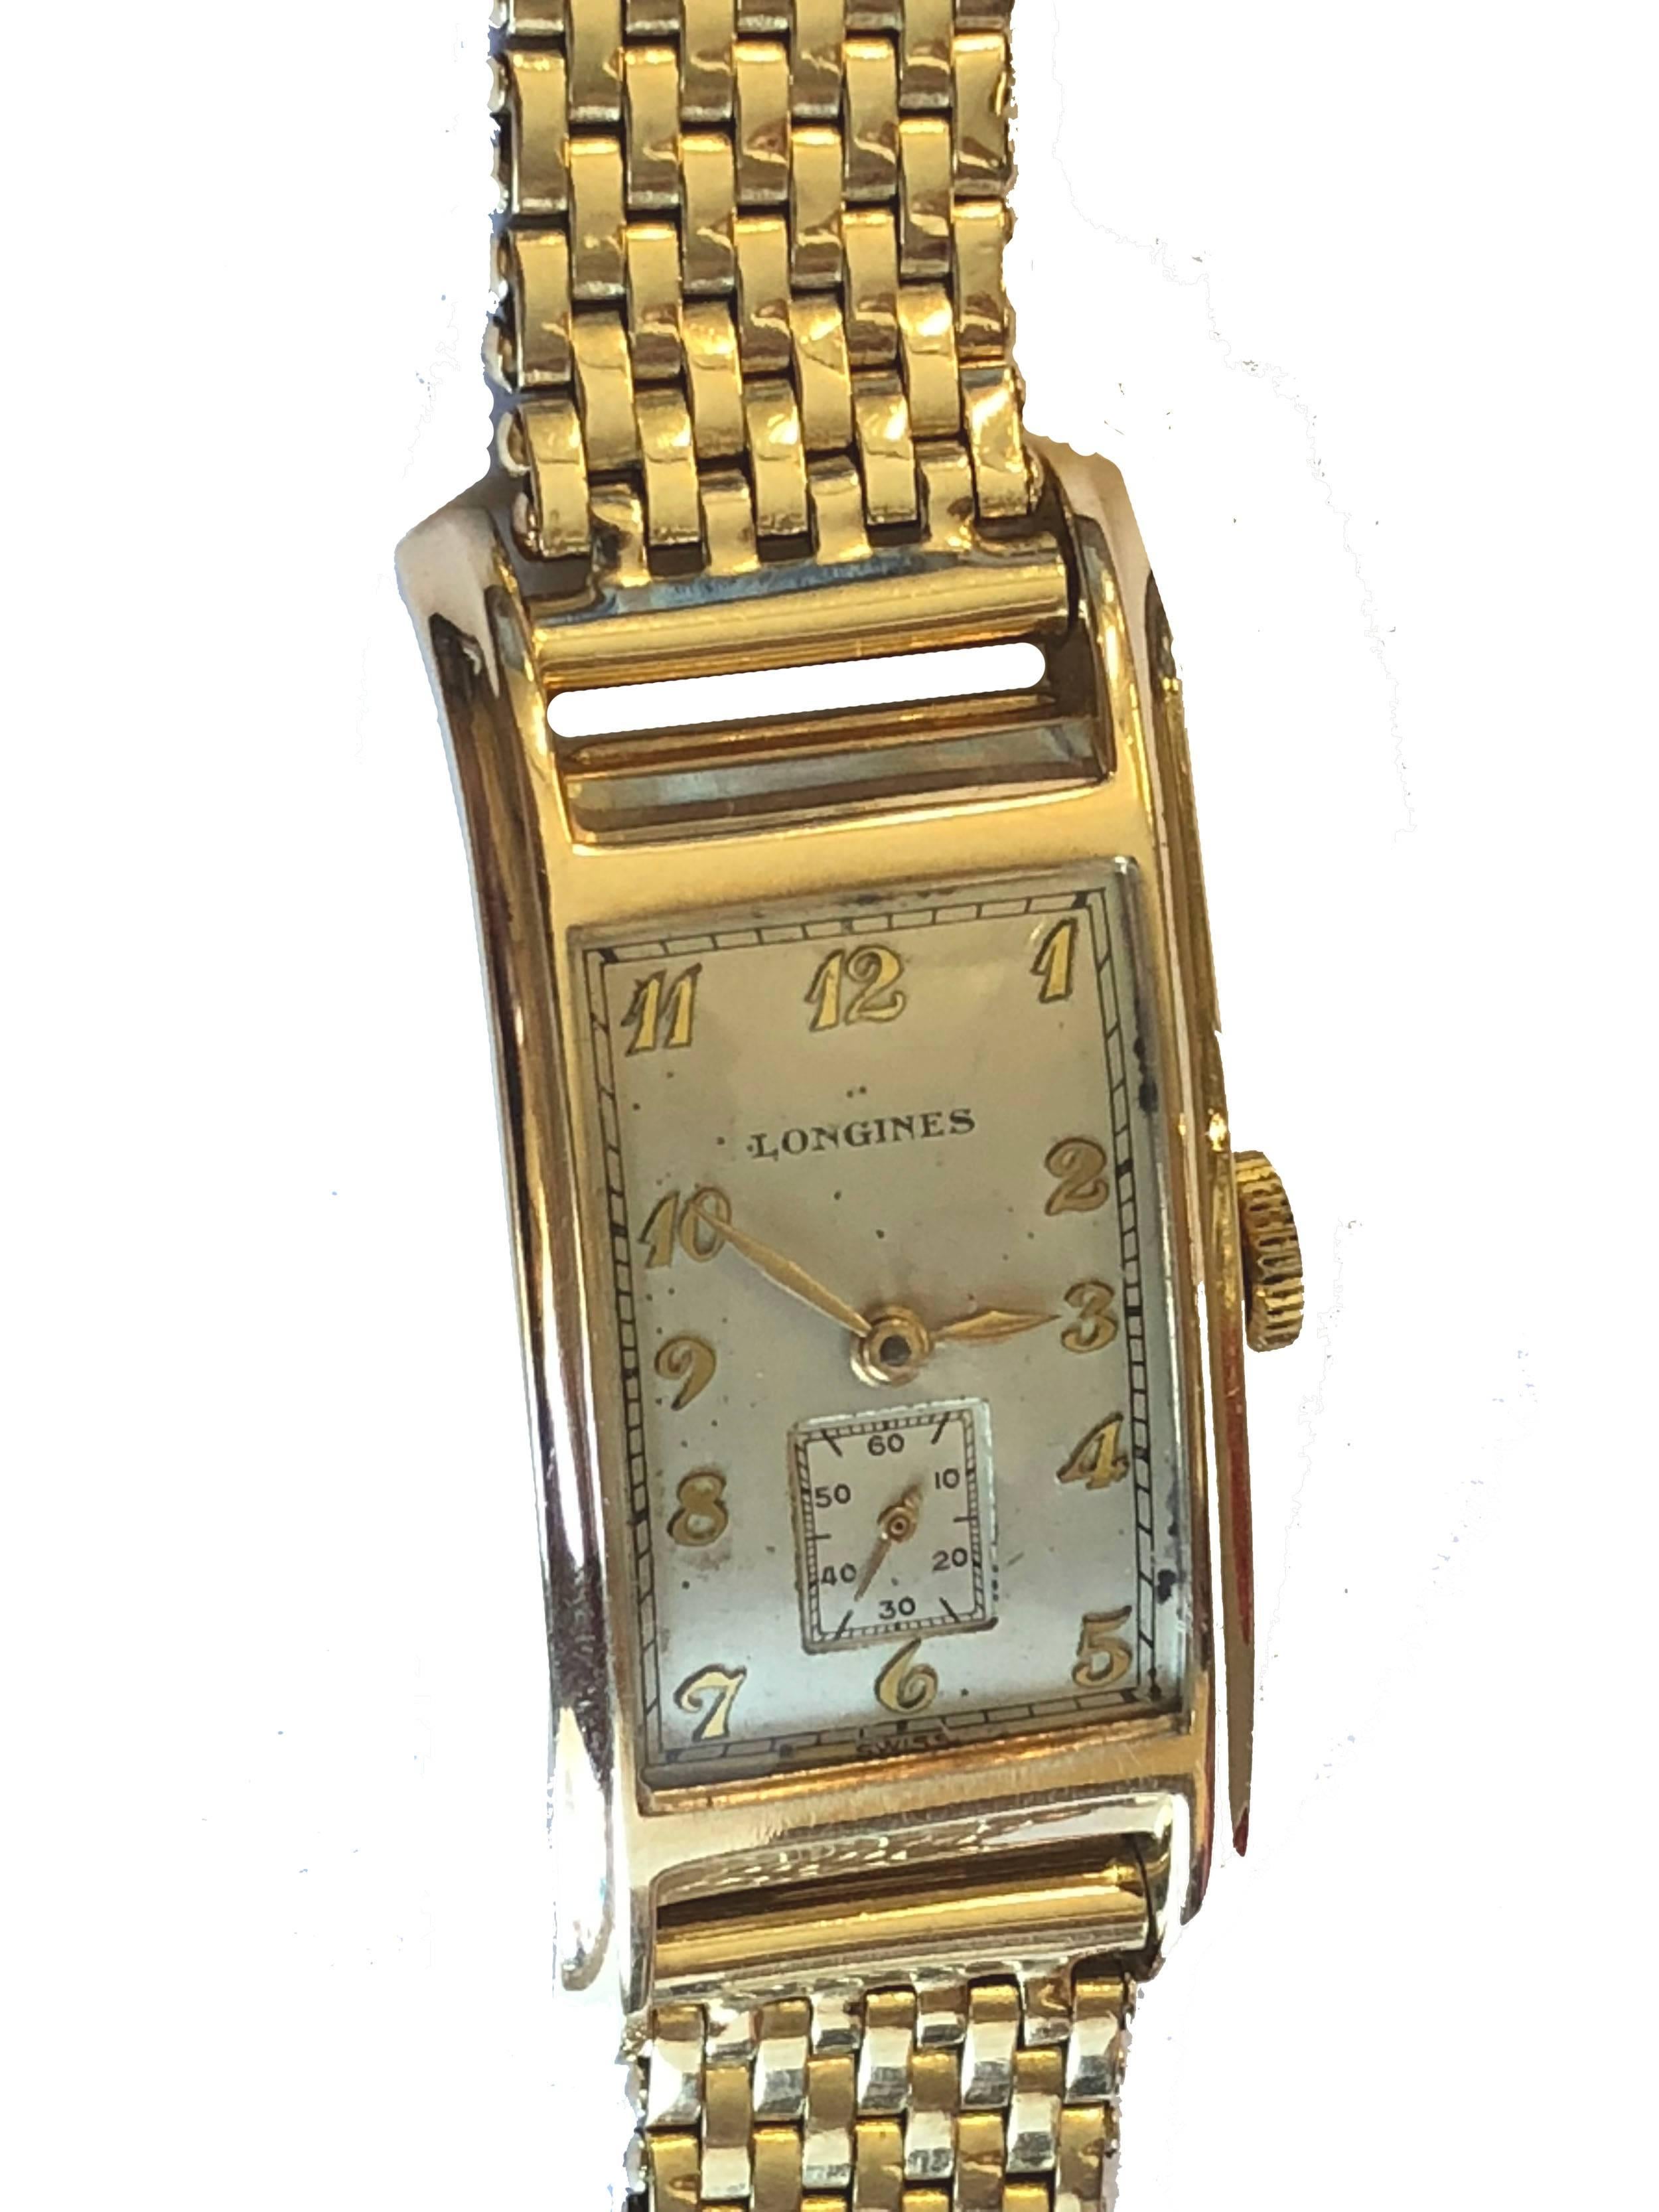 Wir freuen uns, Uhrenliebhabern diese seltene und schöne Longines Art déco-Uhr aus dem Jahr 1943 anbieten zu können: 14-Karat Gelbgold, gebogene Gehäuseform, Hilfszifferblatt mit Sekundenzeiger, Handaufzug. Das von Kreisler gefertigte